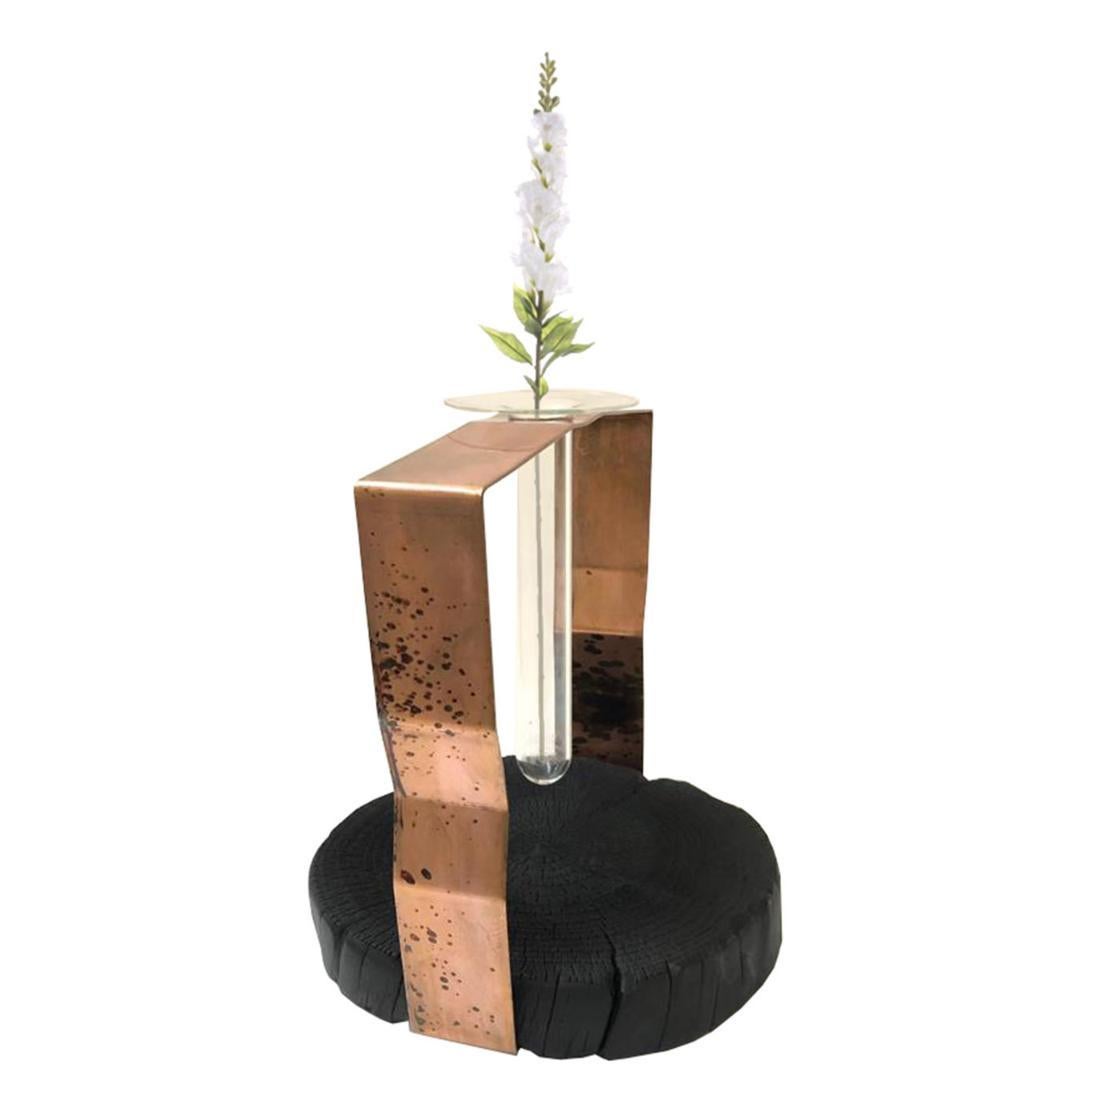 Inspirée par le passé, la Collection Mummoli maintient le profil des éléments d'origine comme une mémoire du temps et les régénère à travers des processus de déconstruction et de fonctionnalisation. Voici le porte-fleurs en cristal, réalisé en bois